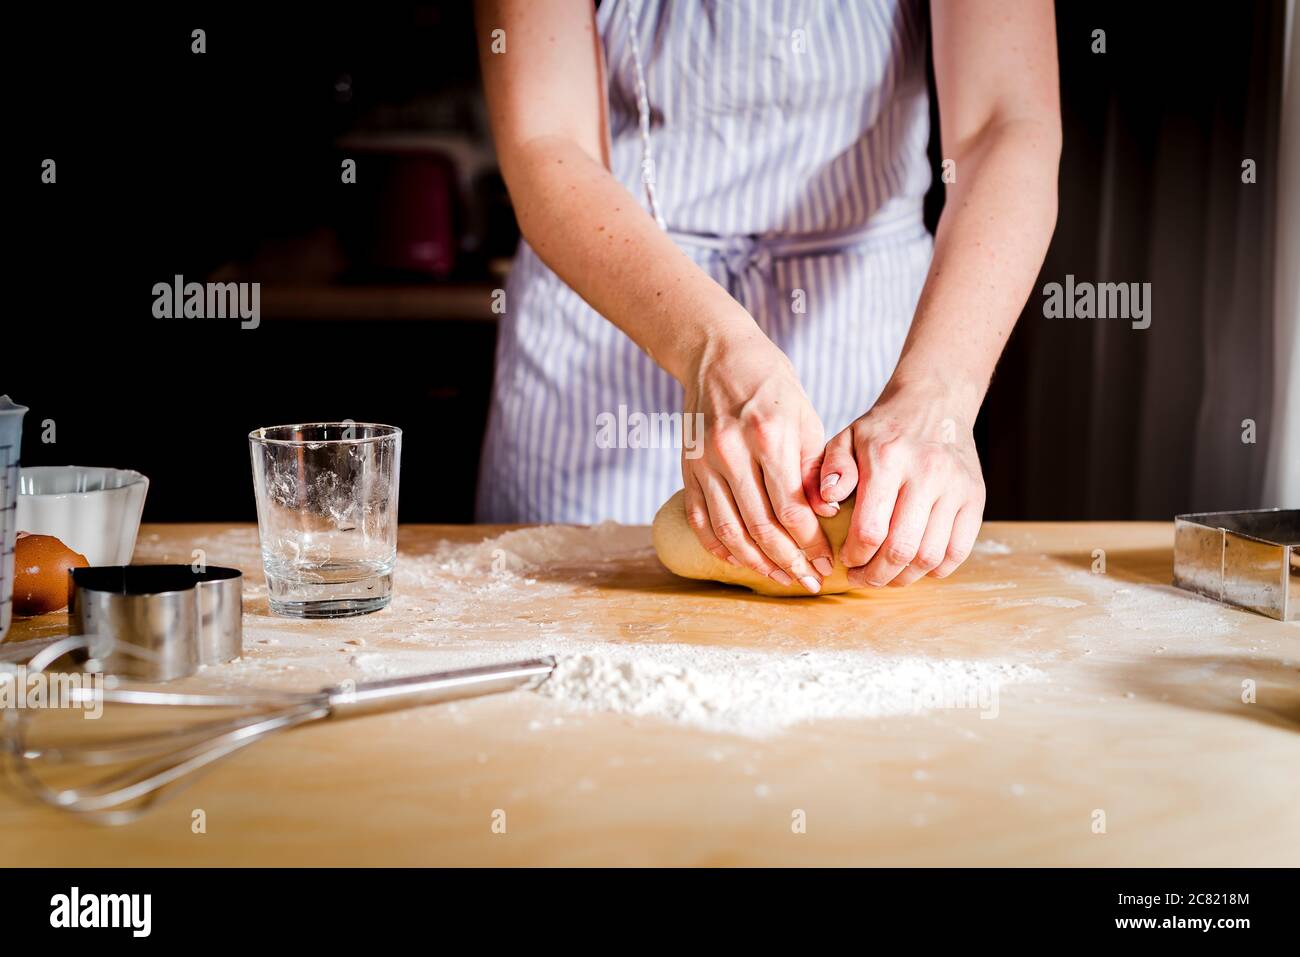 le mani delle donne impastano l'impasto sul tavolo, accessori da cucina Foto Stock